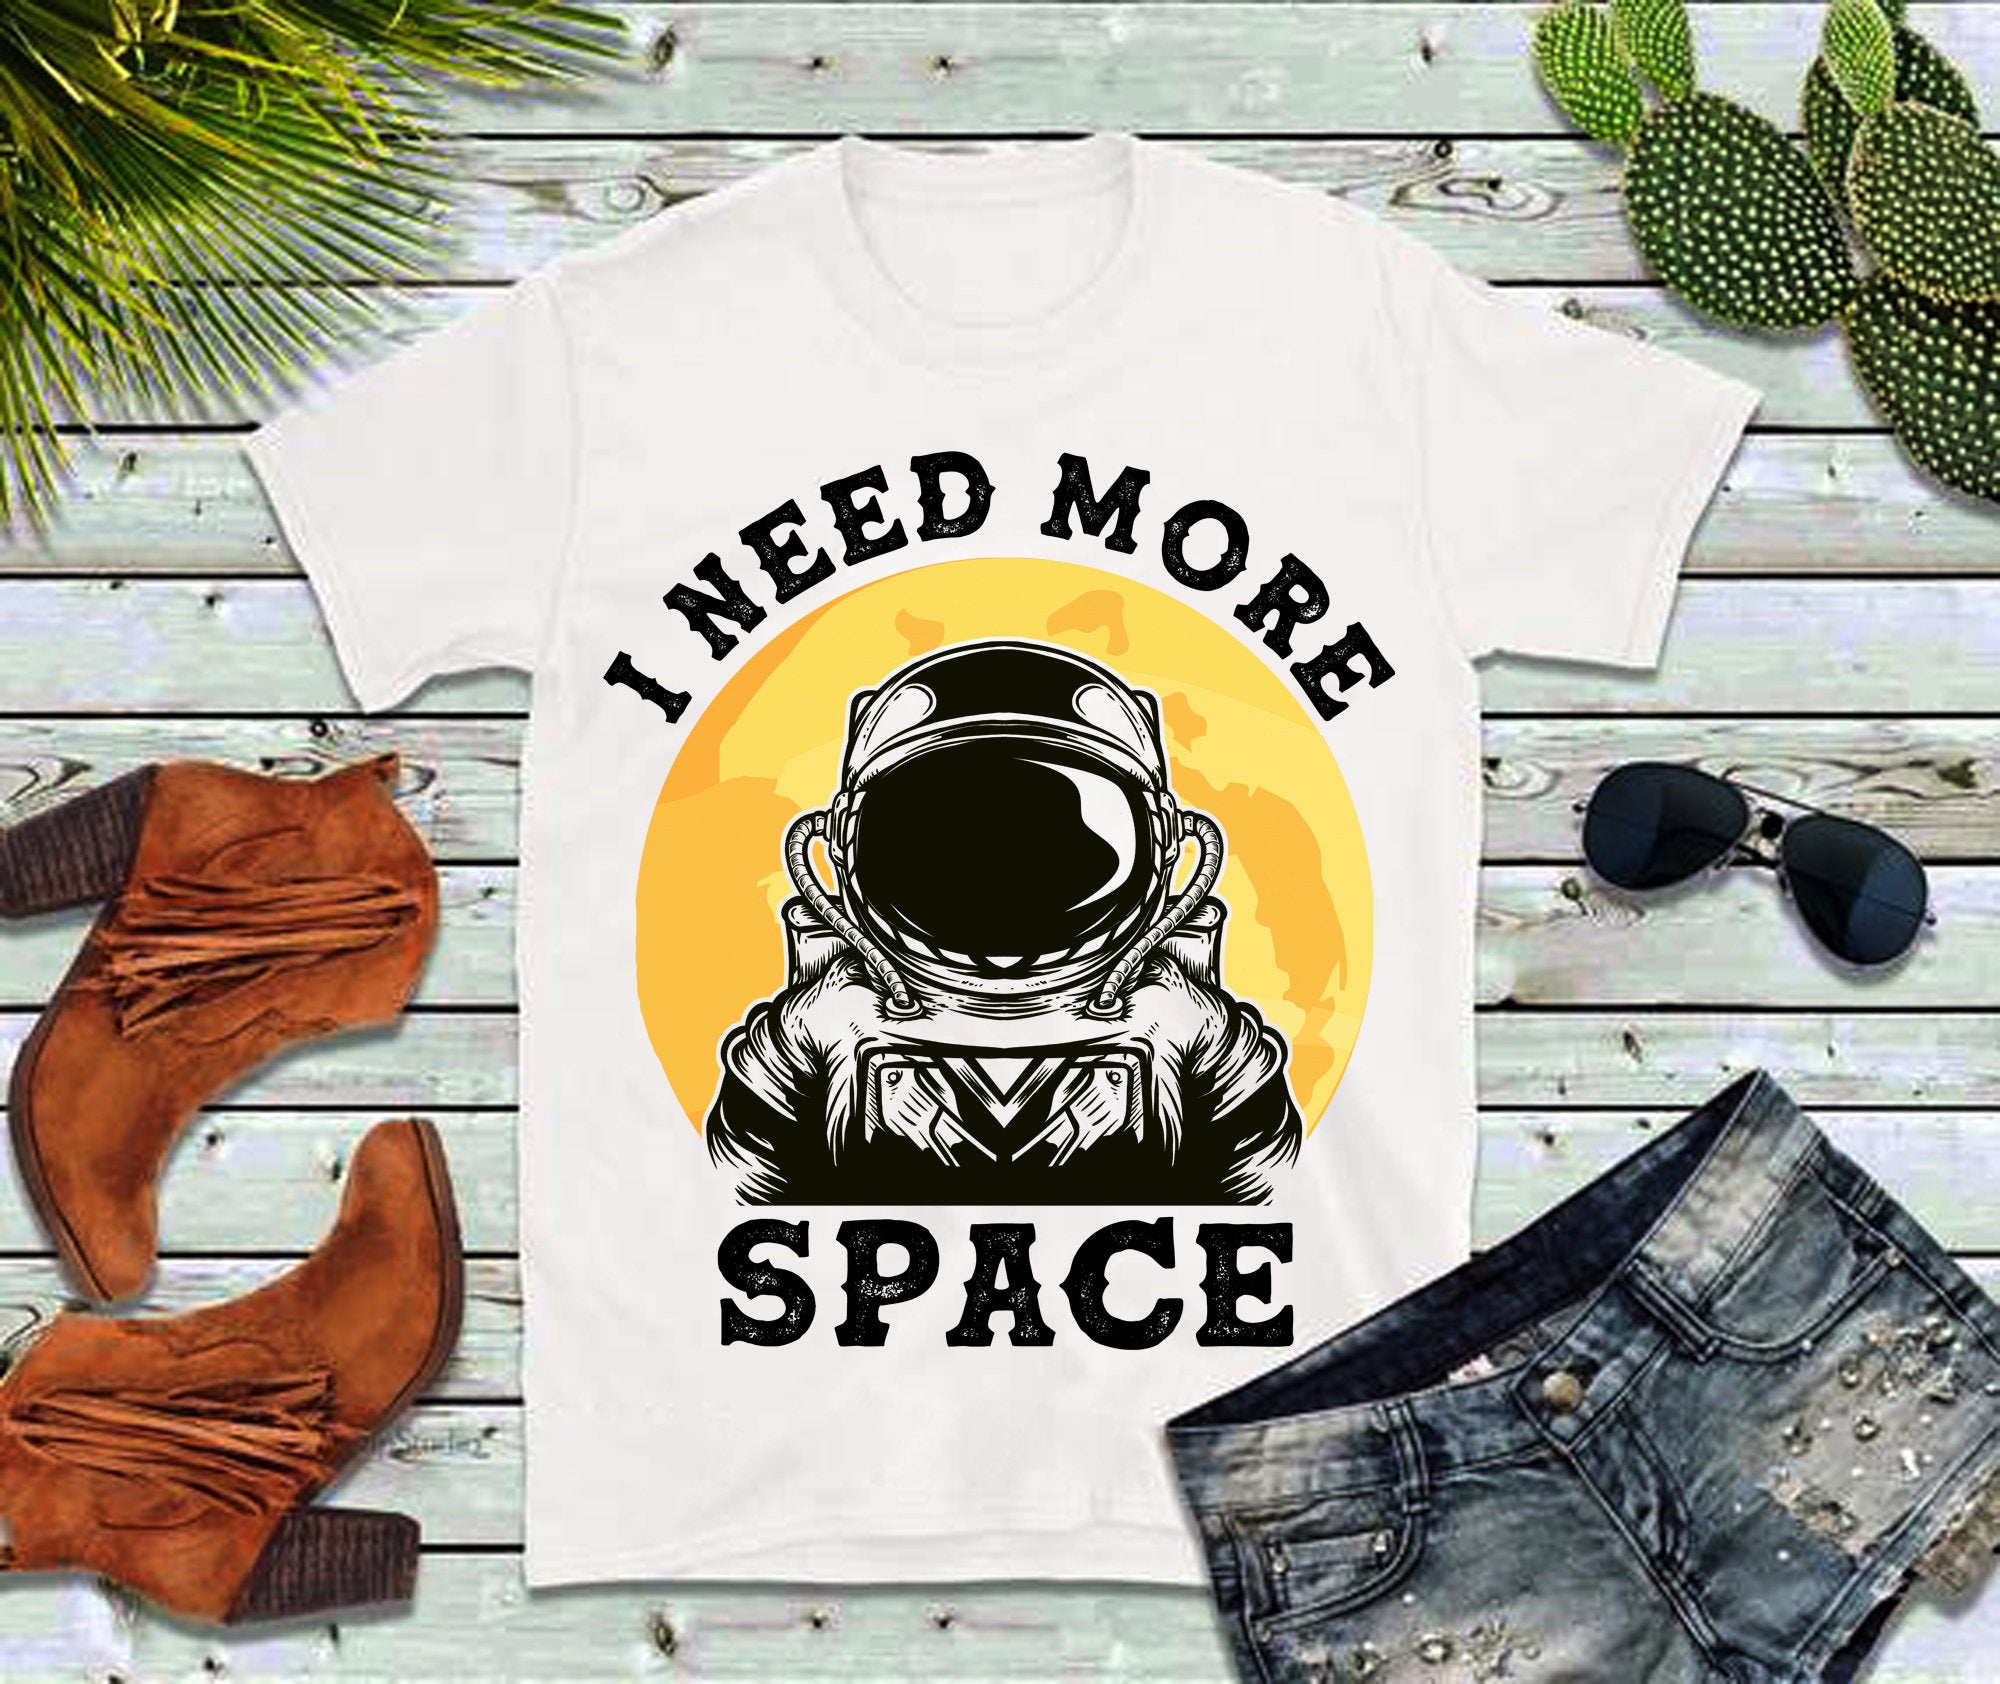 أحتاج إلى مساحة أكبر | تي شيرت ريترو، عاشق الفضاء، قميص رائد الفضاء، قميص ساخر، هدية لرائد الفضاء، تي شيرت علم الفلك، قميص ريترو، قميص ناسا - plusminusco.com